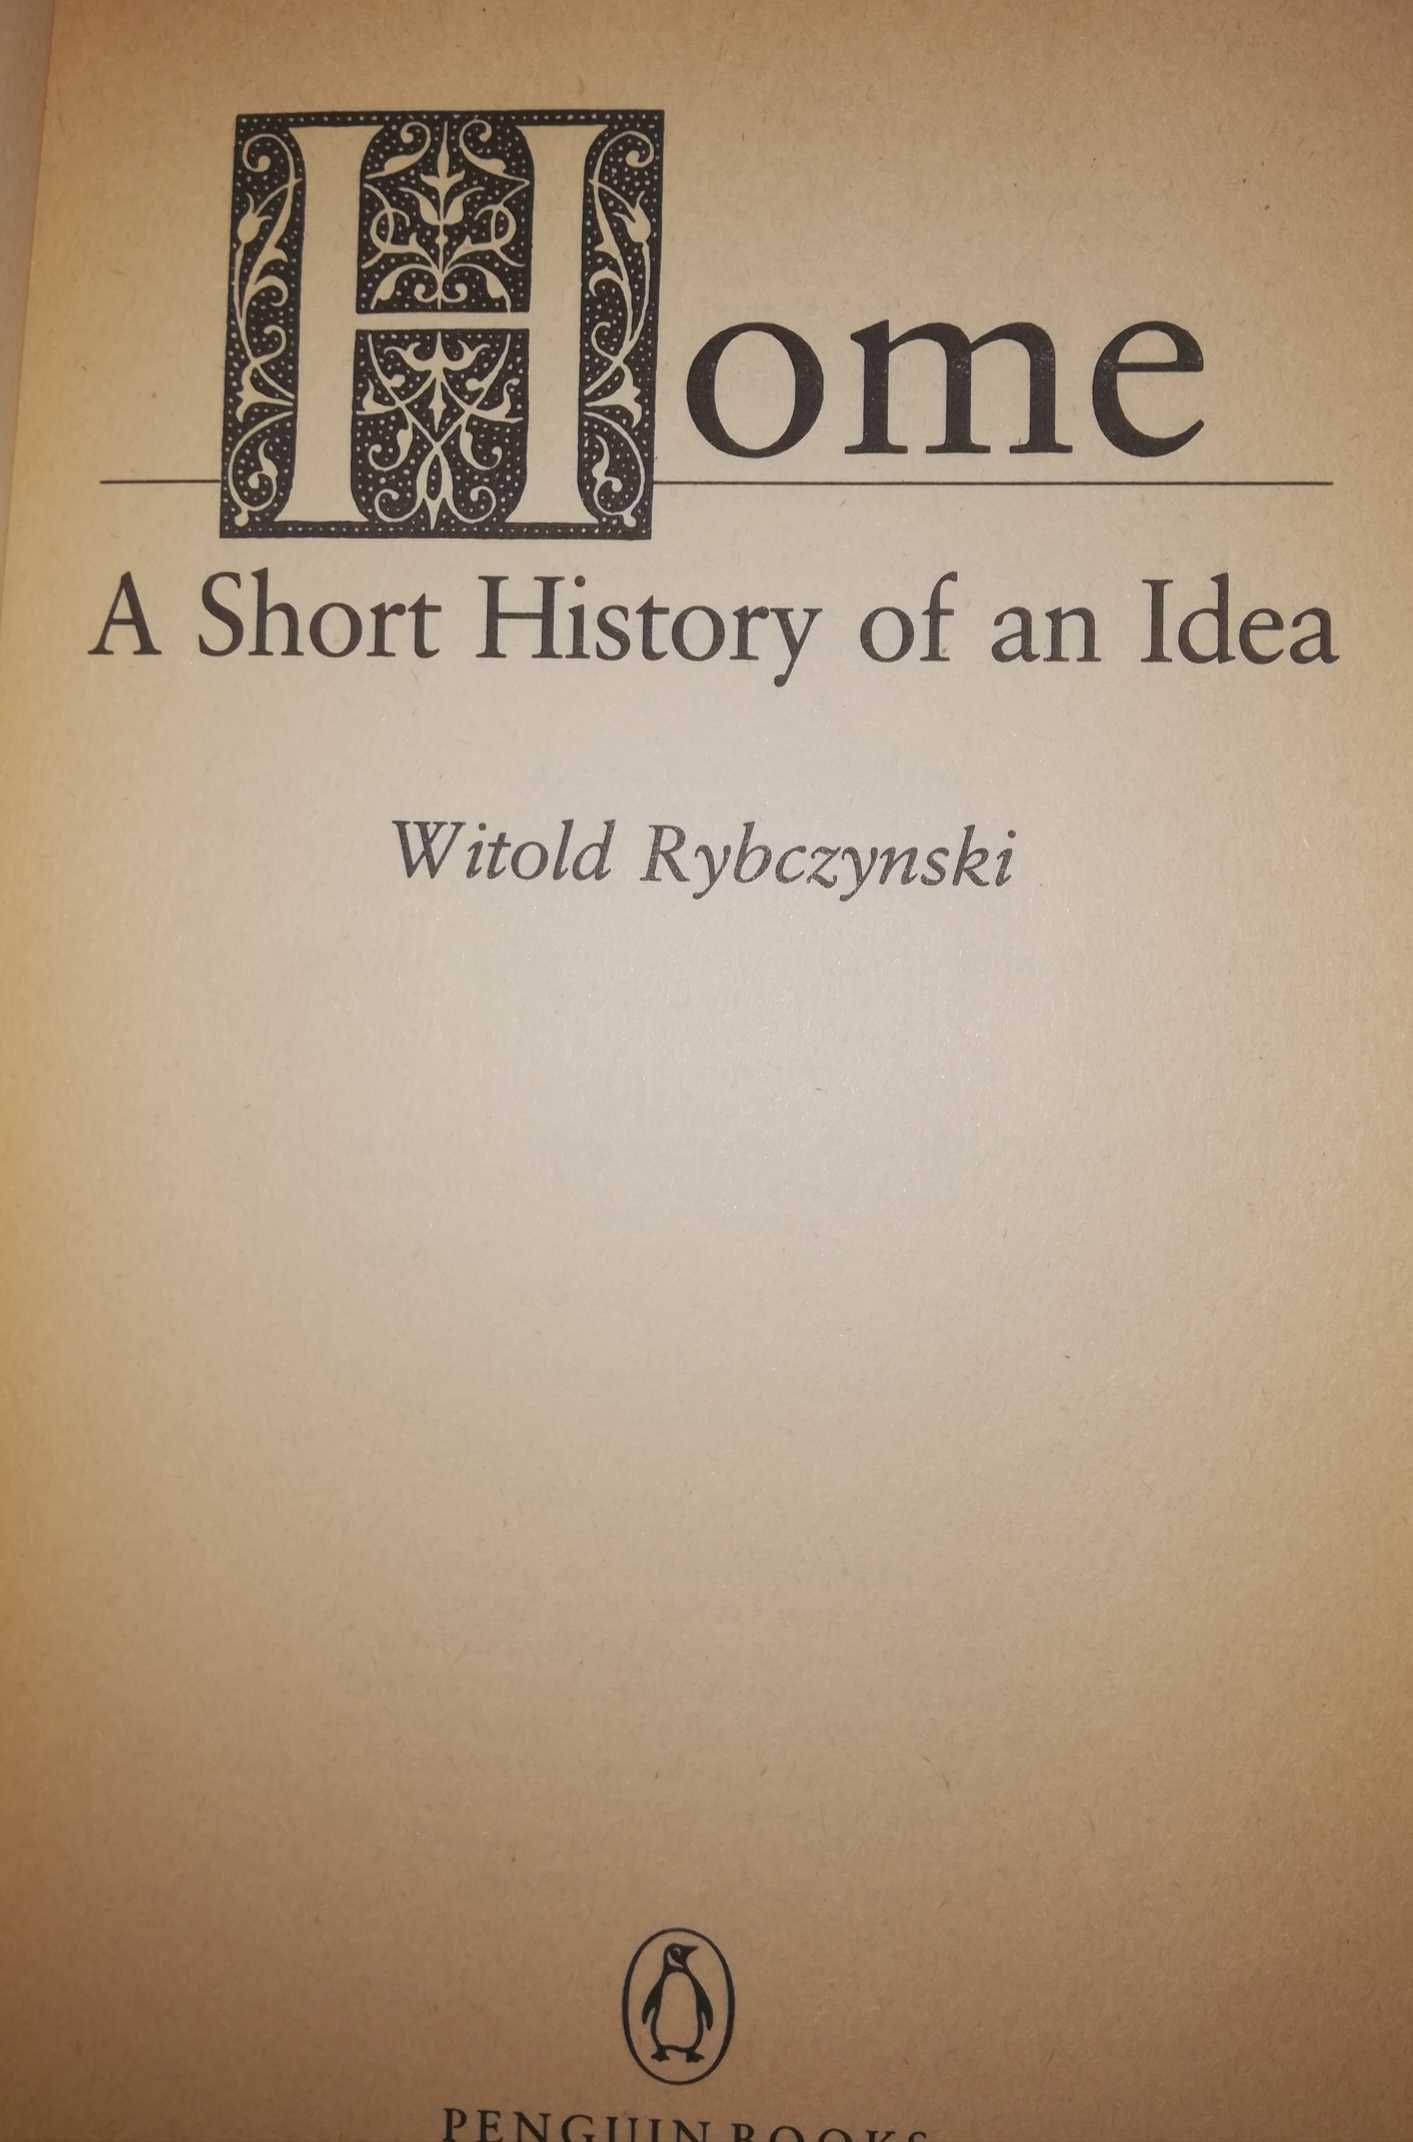 Home Witold Rybczyński książka o idei domu